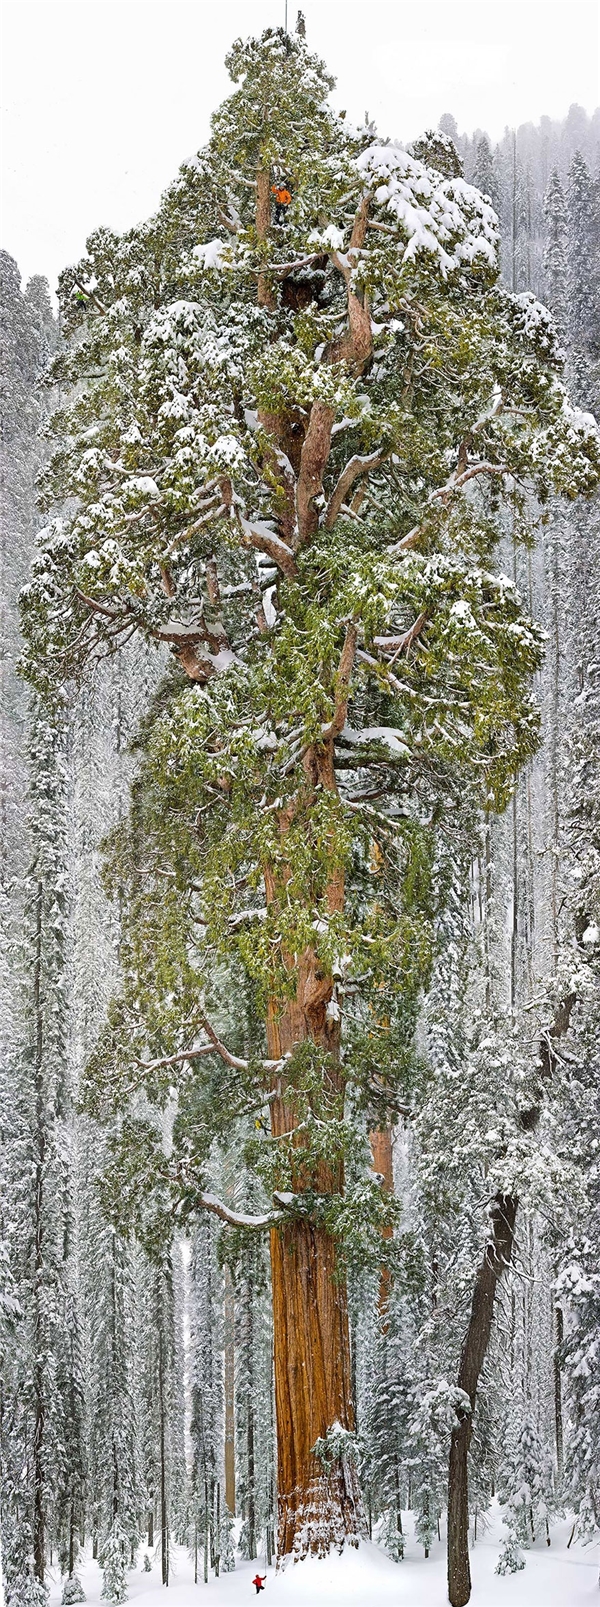 Cây Sequoia ở California với chiều cao 73m với đường kính rộng nhất 28m là cây Sequoia lớn thứ 3 được phát hiện trên thế giới.